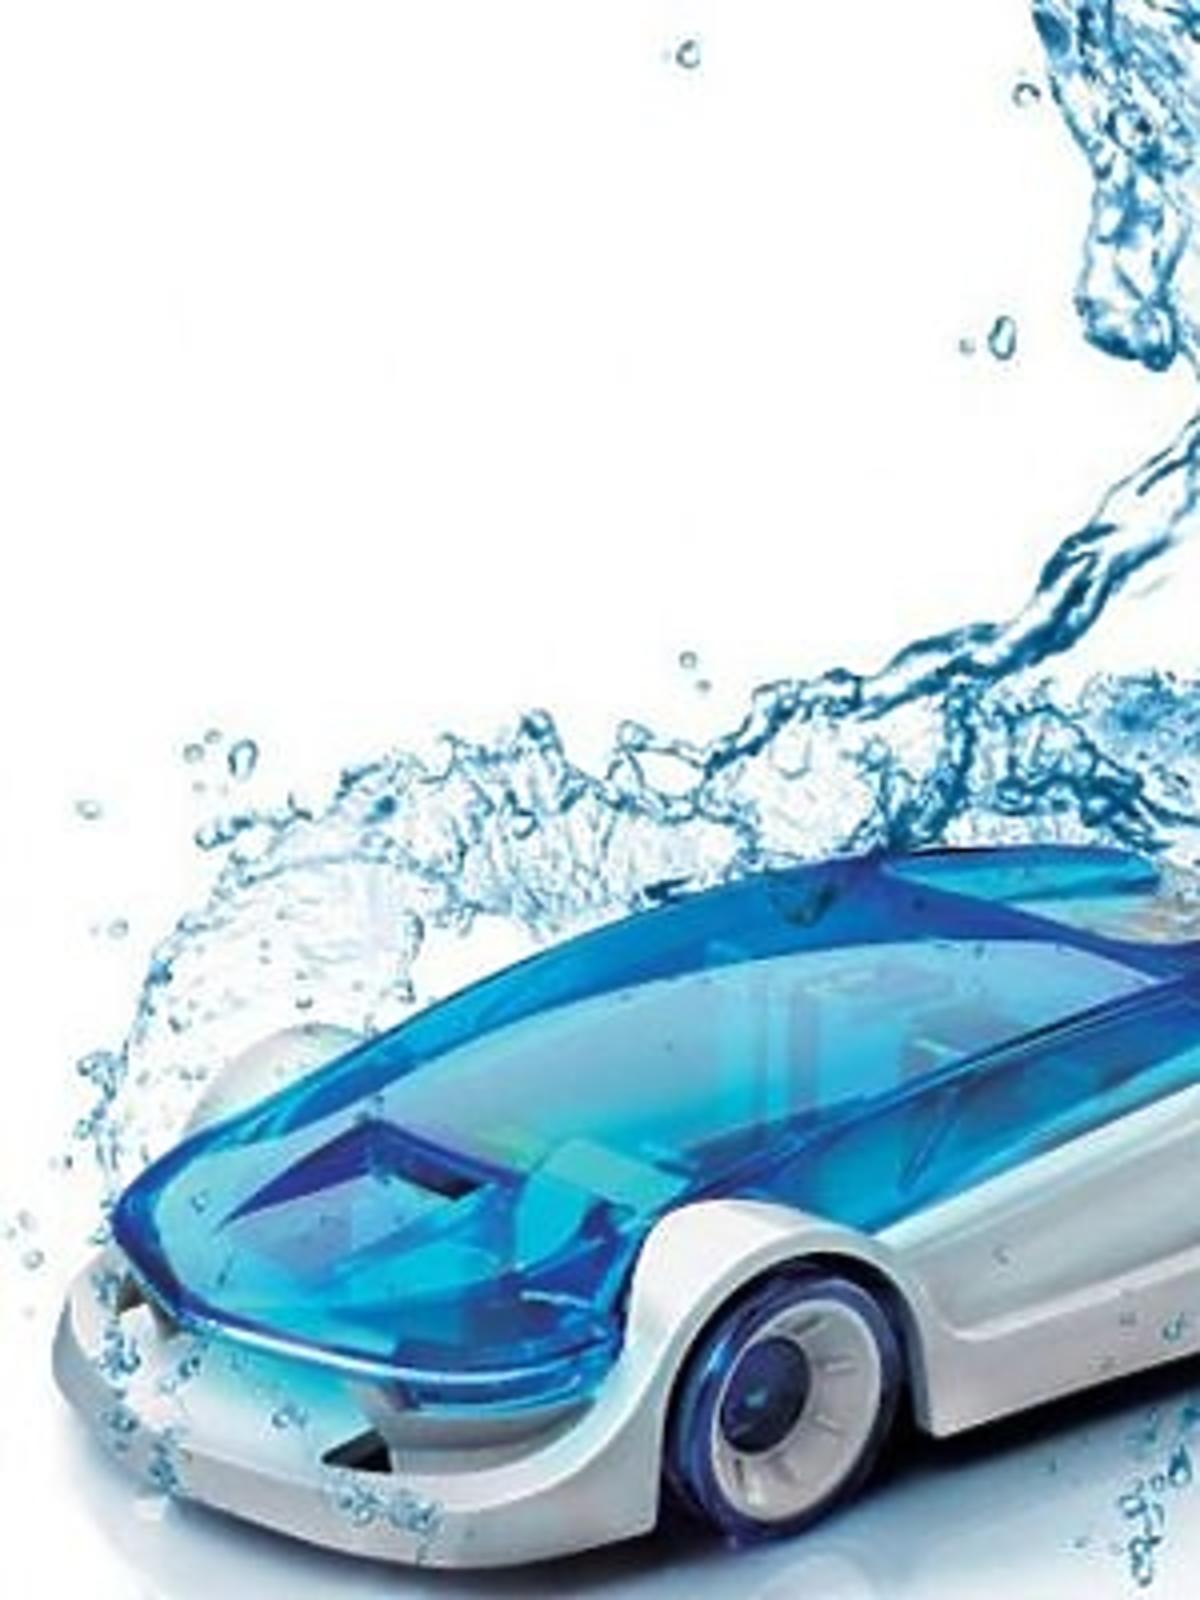 Samochód na wodę